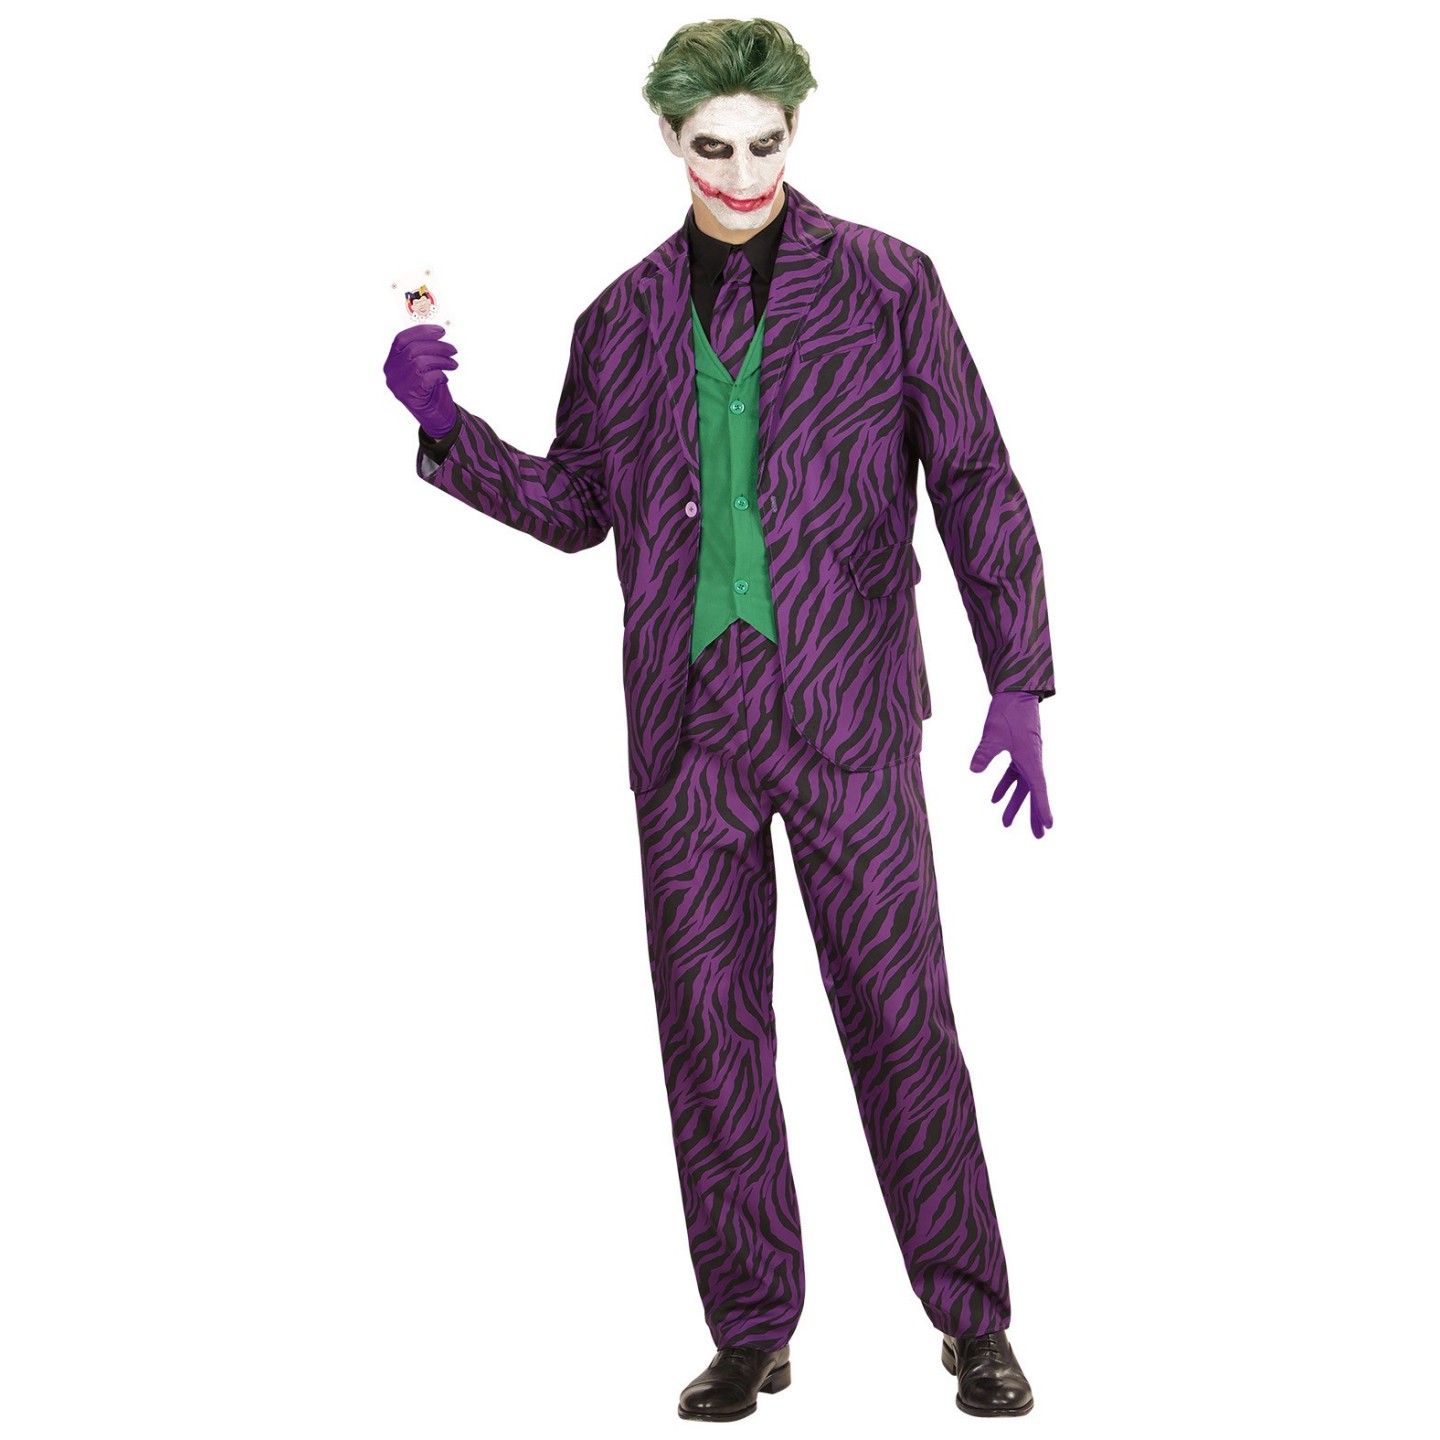 Gevoelig Prooi Voorschrijven The Joker kostuum kopen ? | Jokershop.be - Verkleedkleding